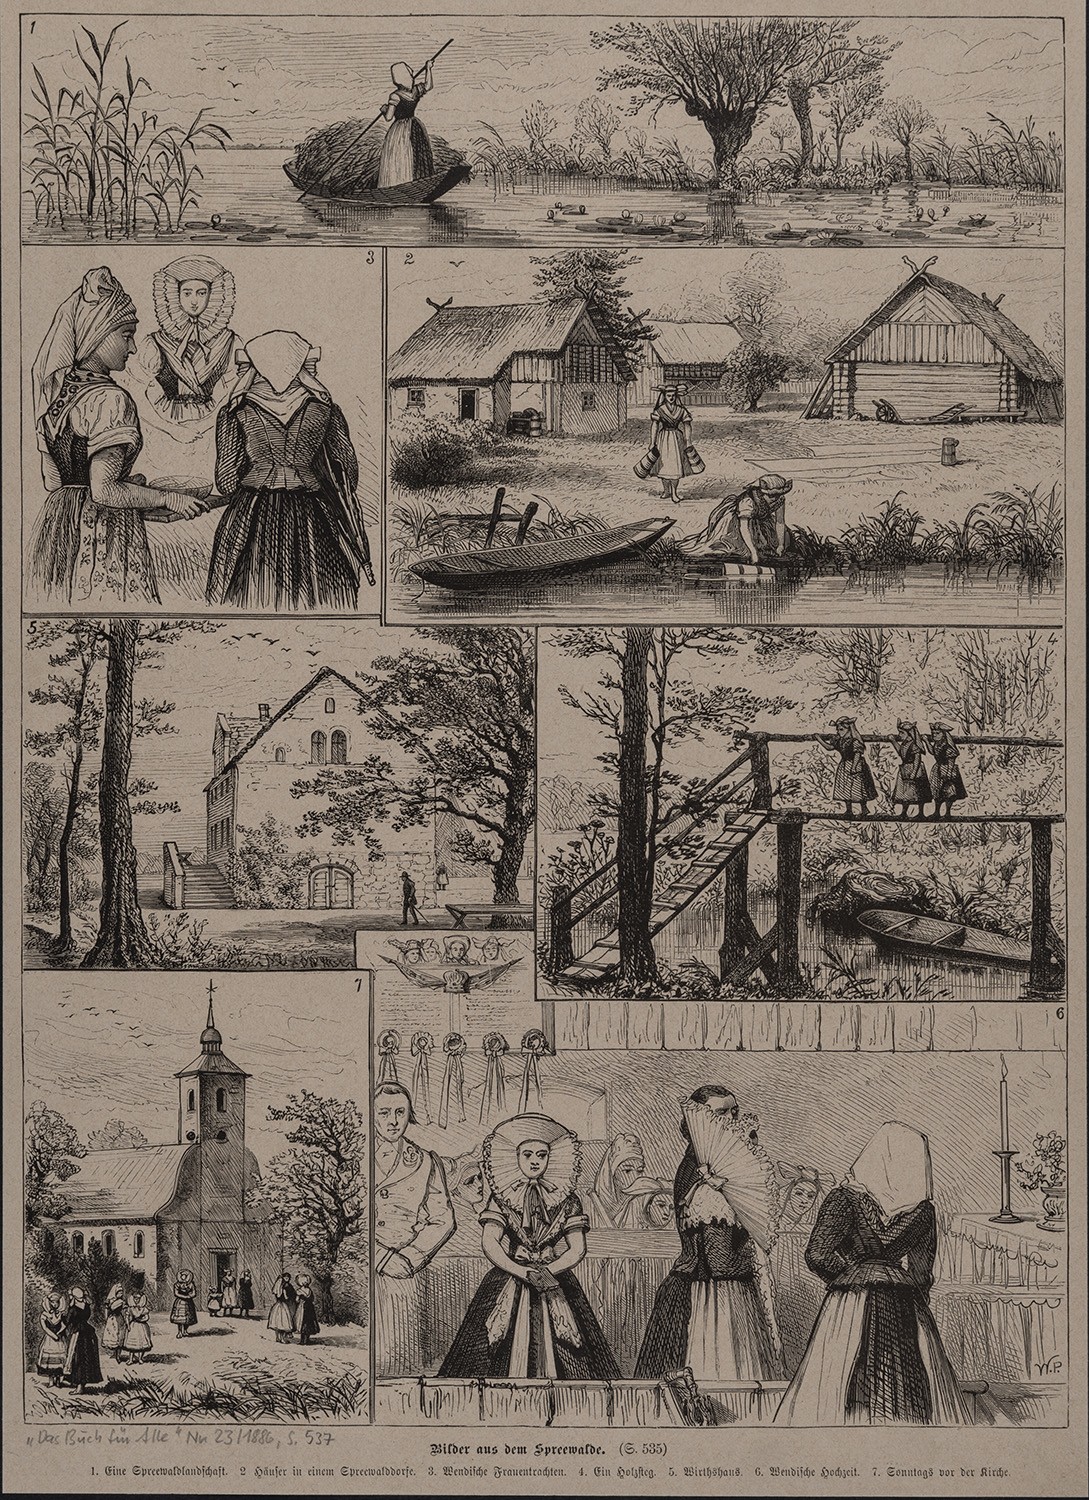 Spreewald: Sieben Darstellungen aus dem Spreewald (Landesgeschichtliche Vereinigung für die Mark Brandenburg e.V., Archiv CC BY)